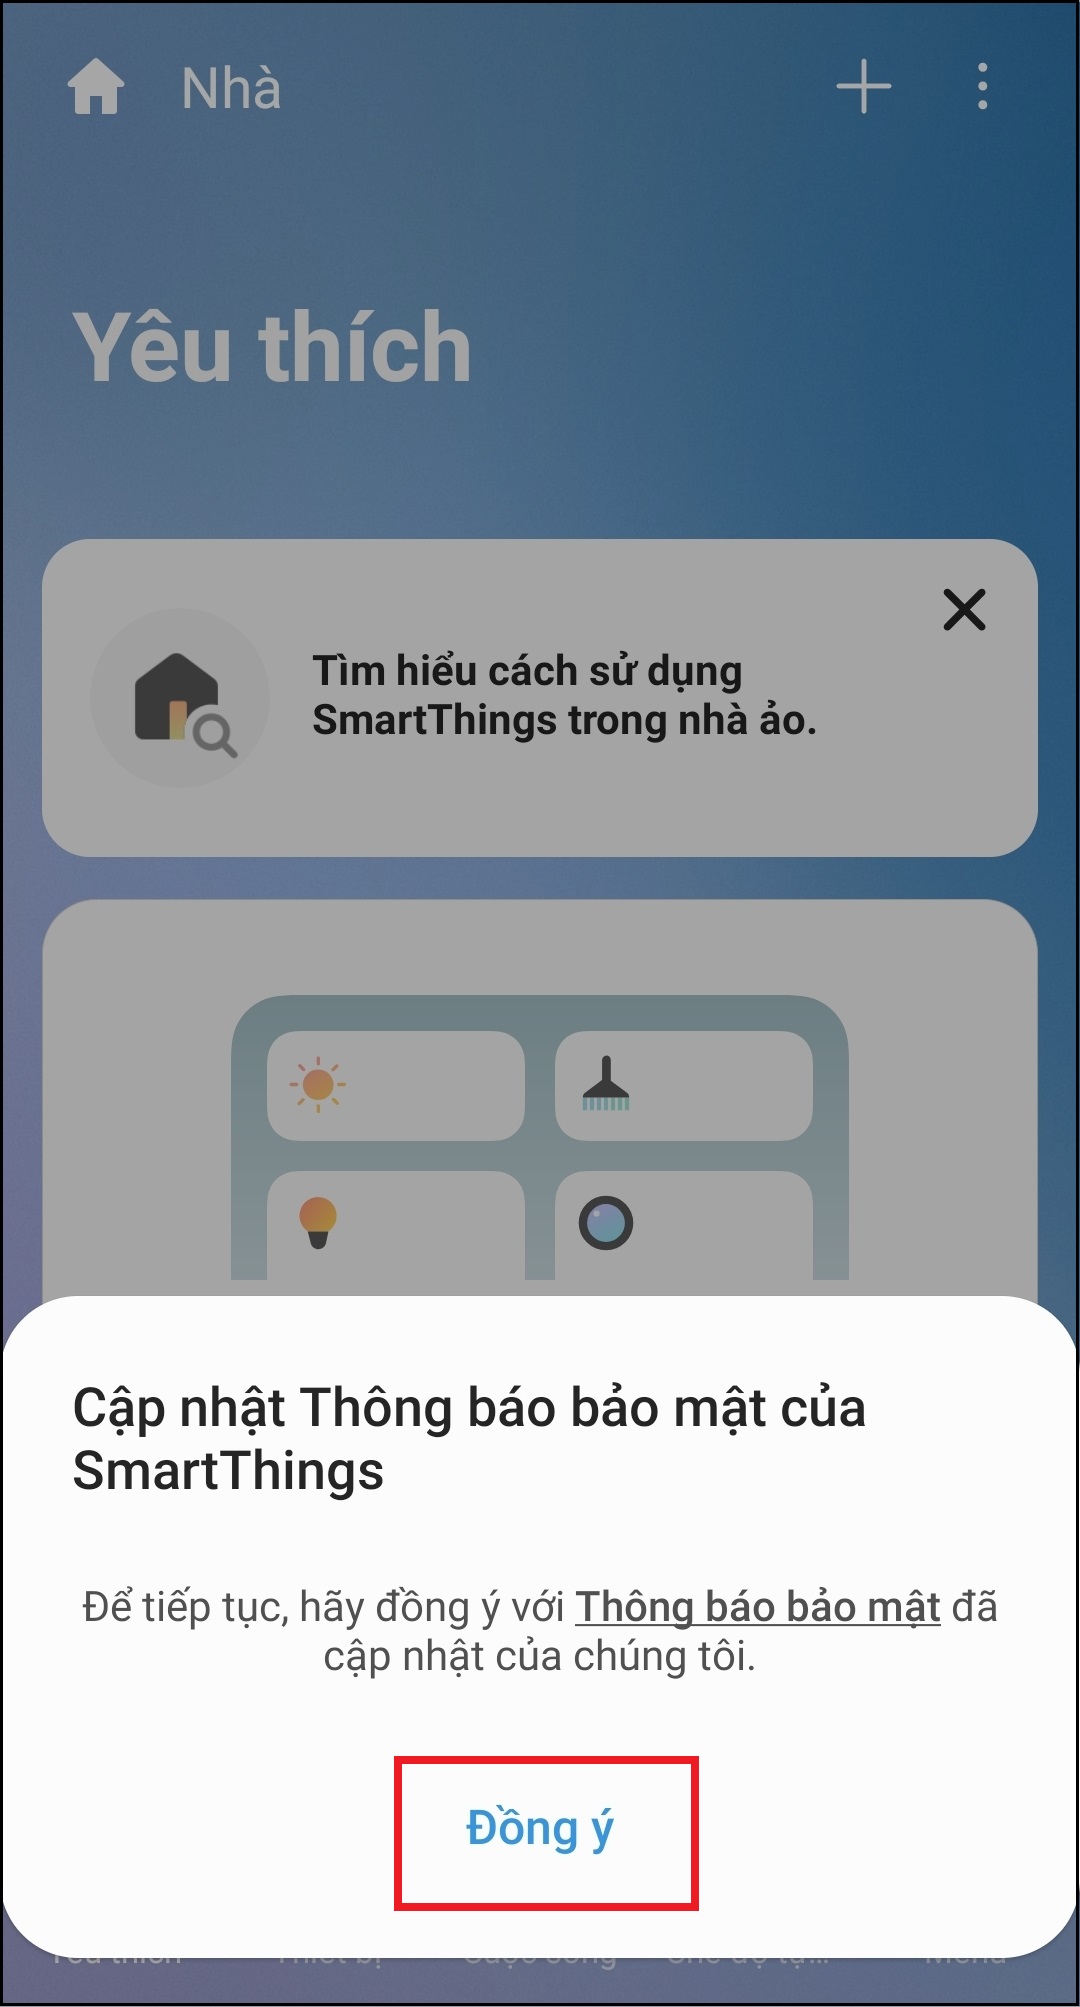 Hướng dẫn sử dụng ứng dụng SmartThings điều khiển Smart tivi Samsung > Màn hình sẽ hiển thị thông báo Cập nhật Thông báo bảo mật của SmartThings > Bạn cần chọn Đồng ý.